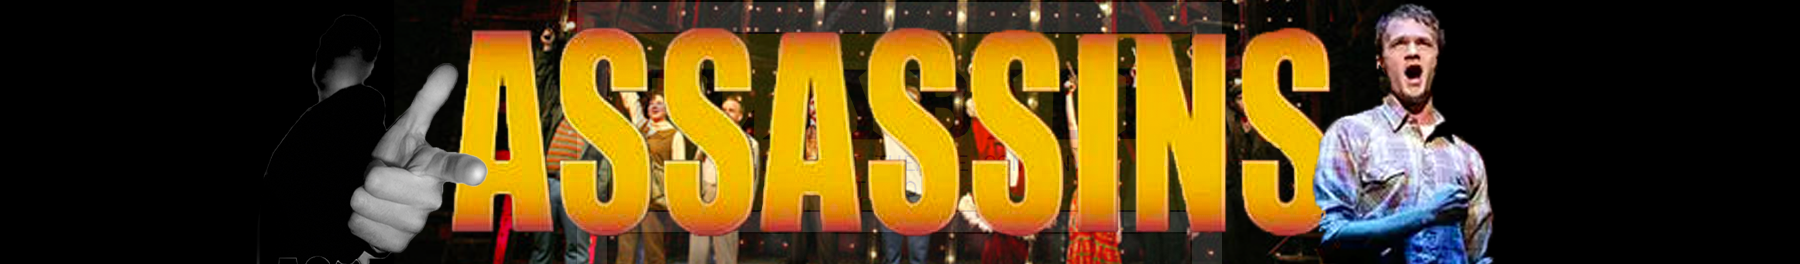 Assassins Broadway Show